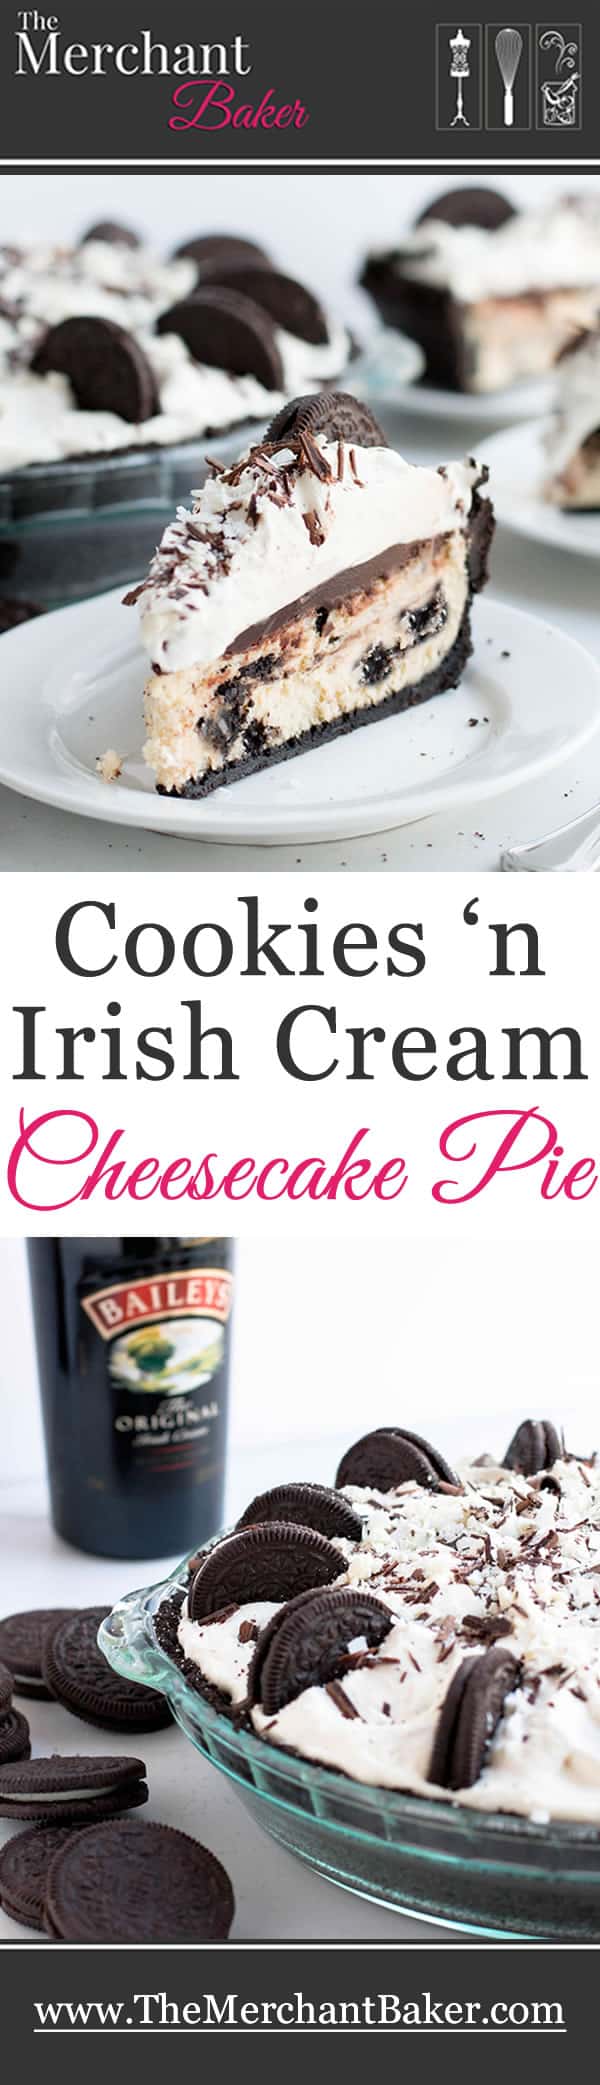 Cookies 'n Irish Cream Cheesecake Pie